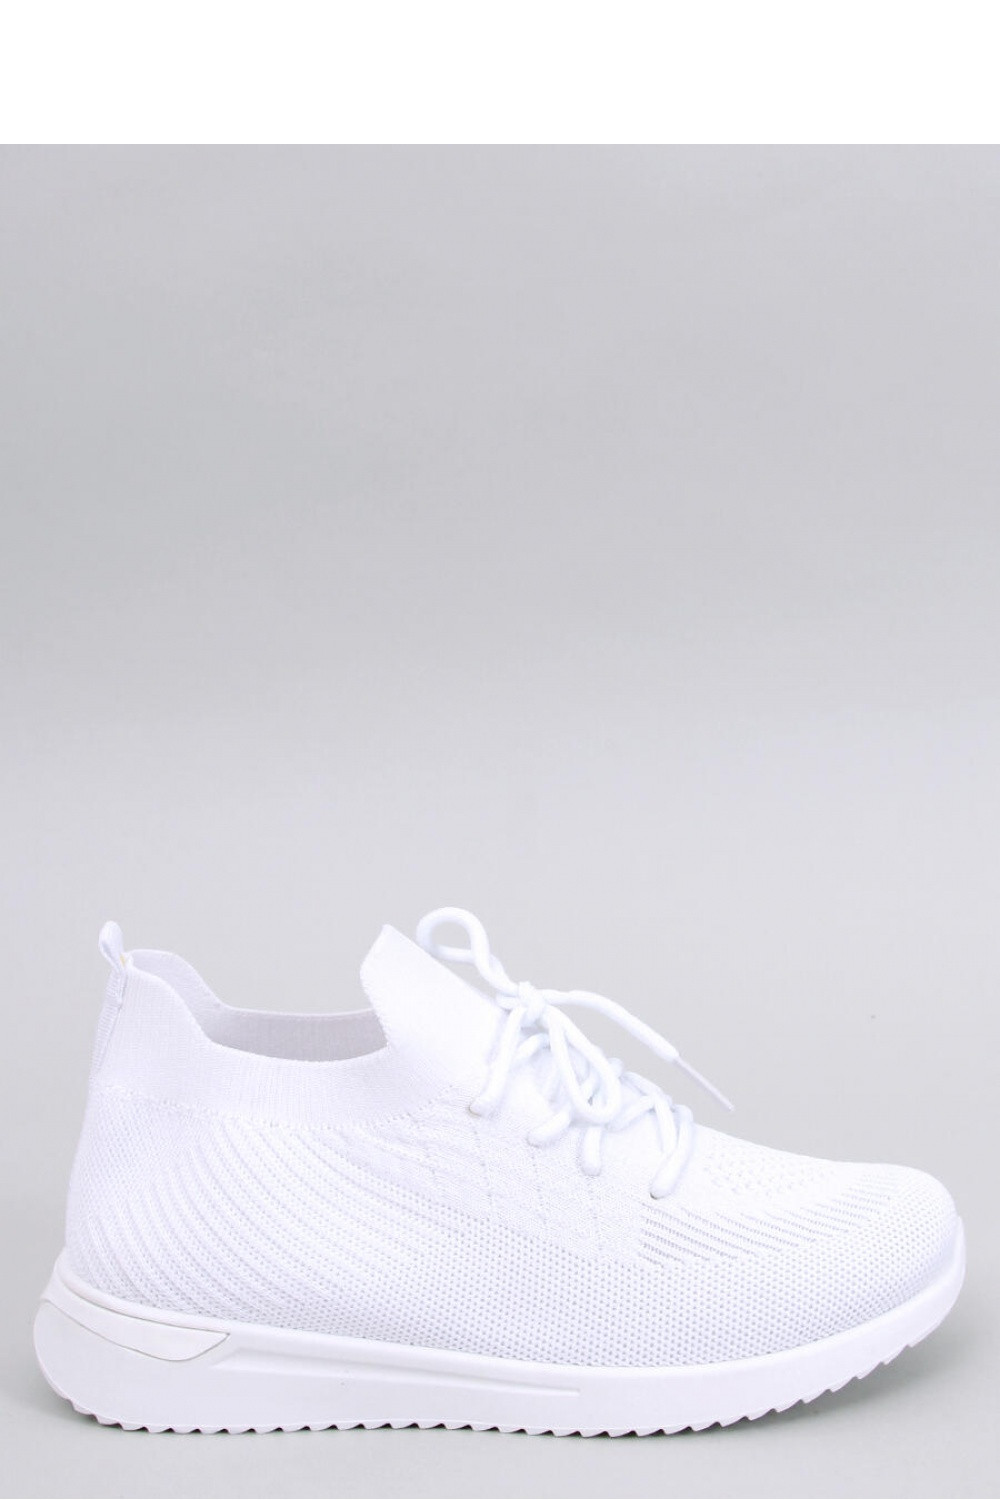 Dámská sportovní obuv 9028-SP bílá - Inello 37